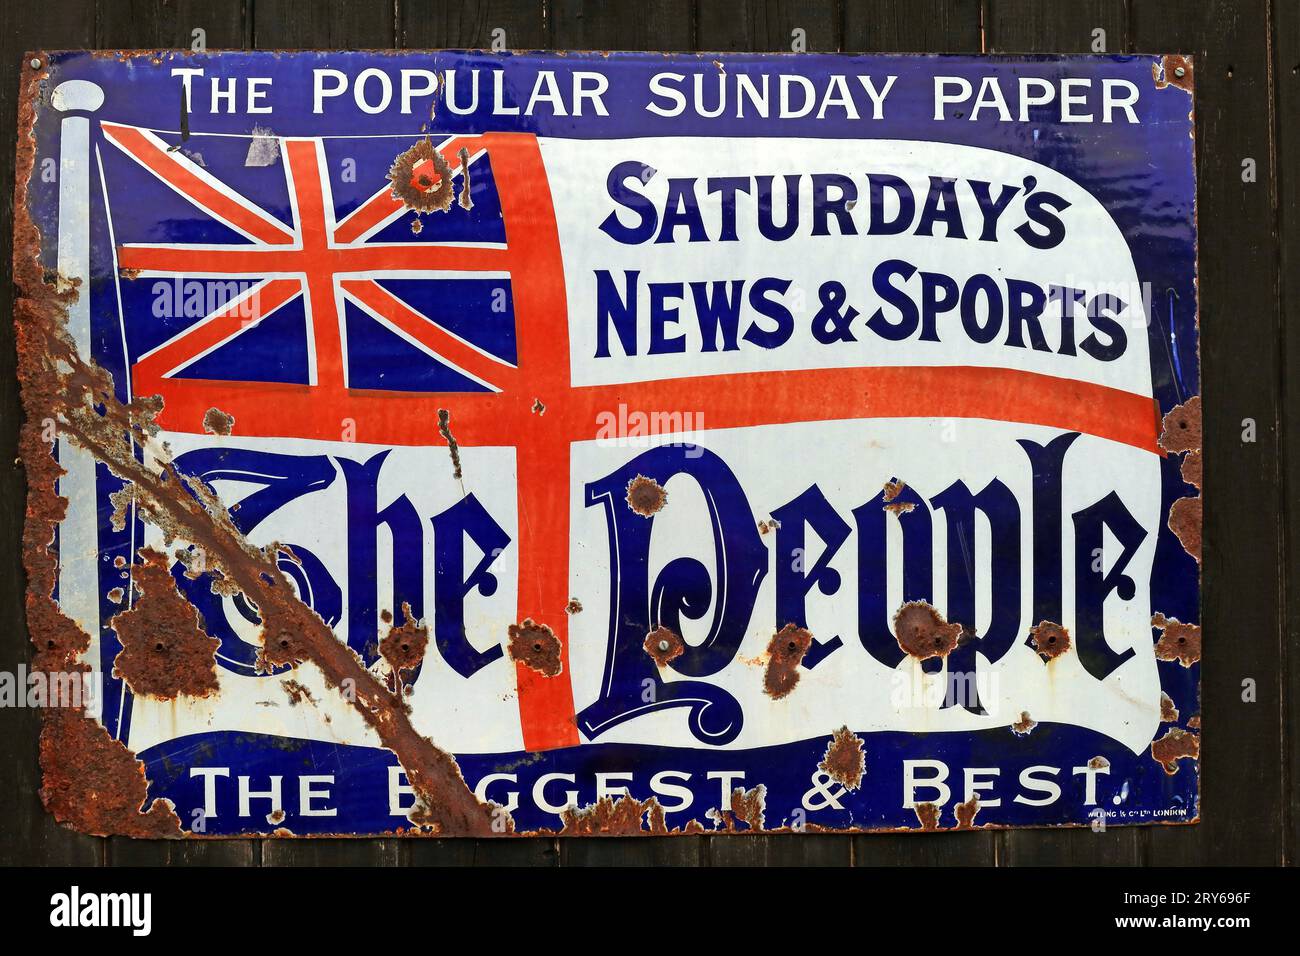 Publicité émaillée pour le journal populaire du dimanche, le peuple, avec le drapeau de l'Union britannique, le plus grand et le meilleur Banque D'Images